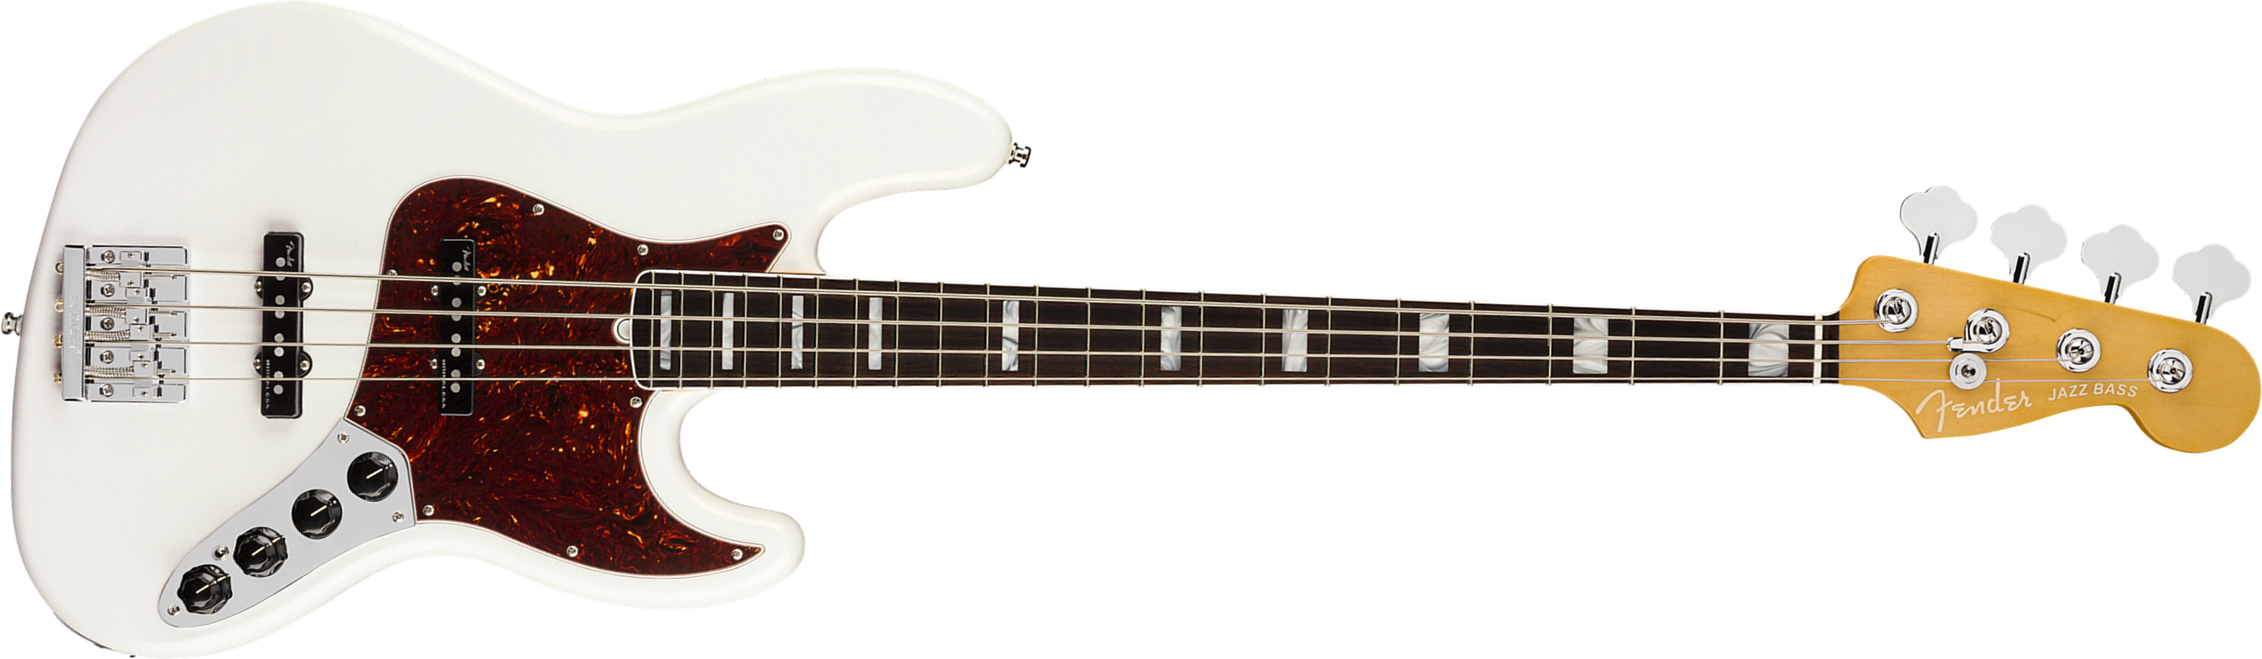 Fender Jazz Bass American Ultra 2019 Usa Rw - Arctic Pearl - Bajo eléctrico de cuerpo sólido - Main picture